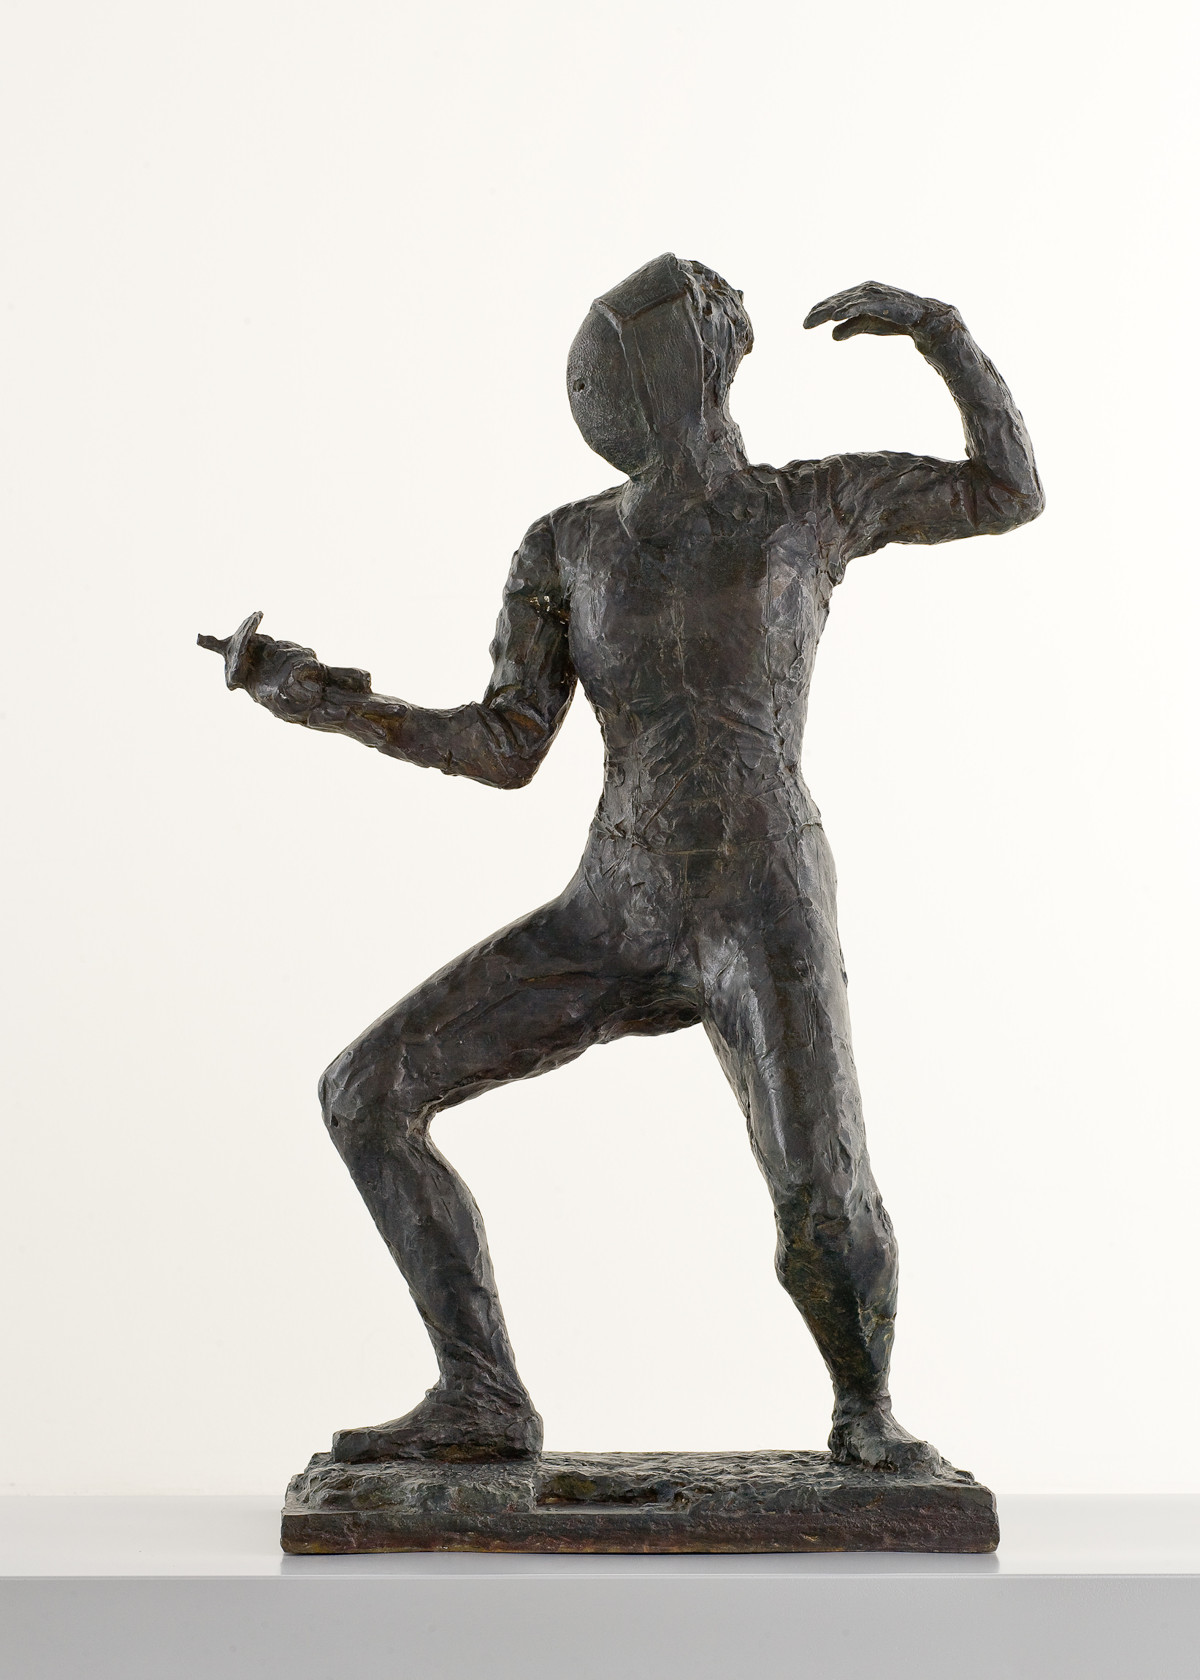 Sculpture en bronze patiné foncé représentant une escrimeuse en garde, tenant à la main son fleuret